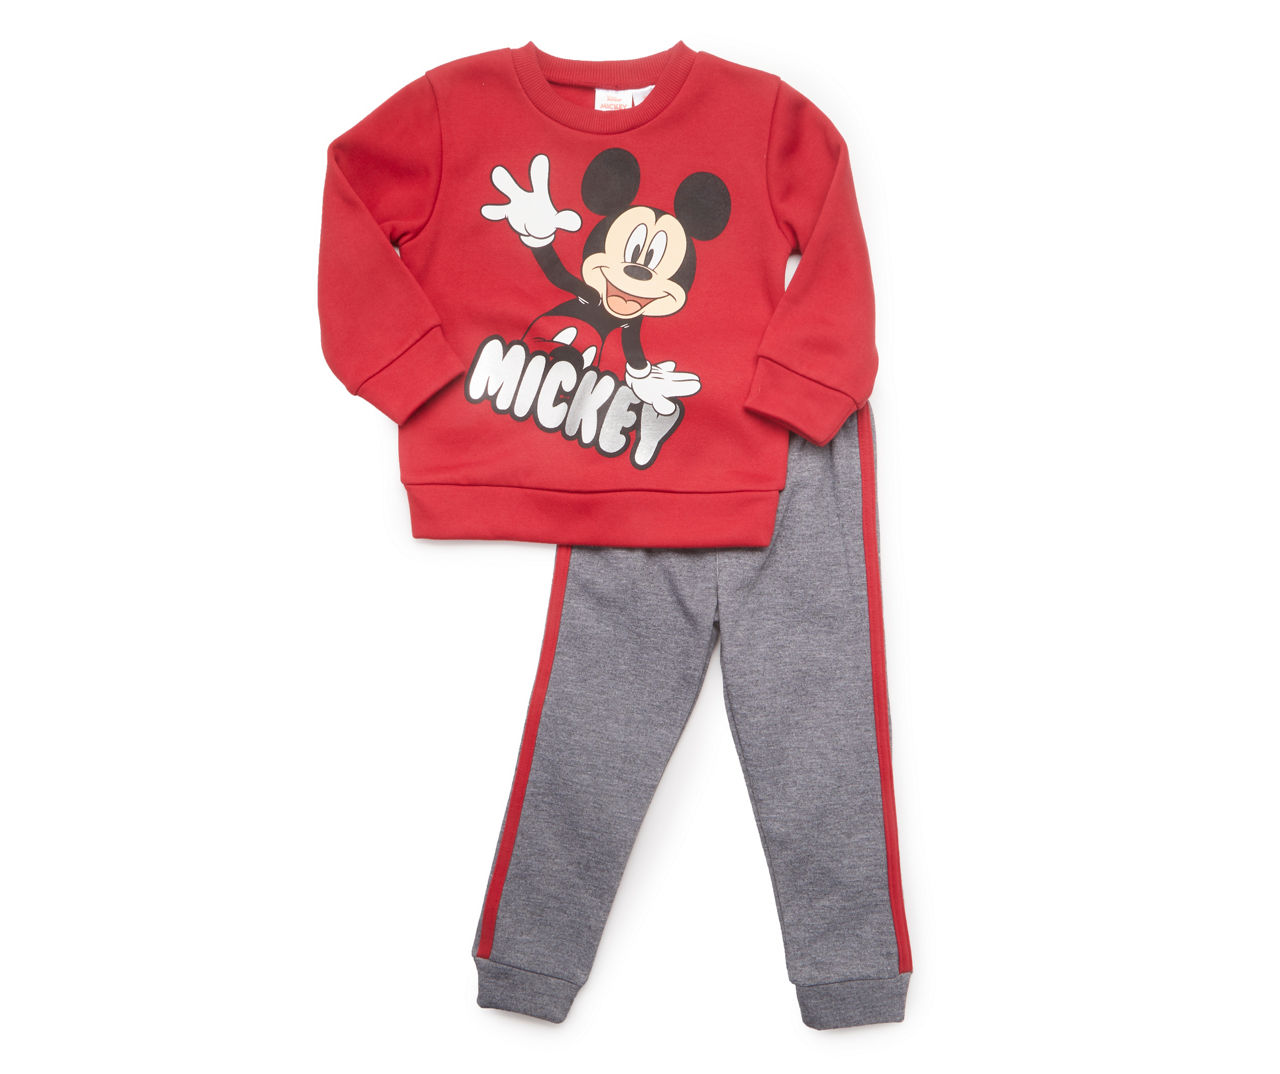 Baby Size 18M "Mickey" Red Fleece Sweatshirt & Gray Side-Stripe Sweatpants